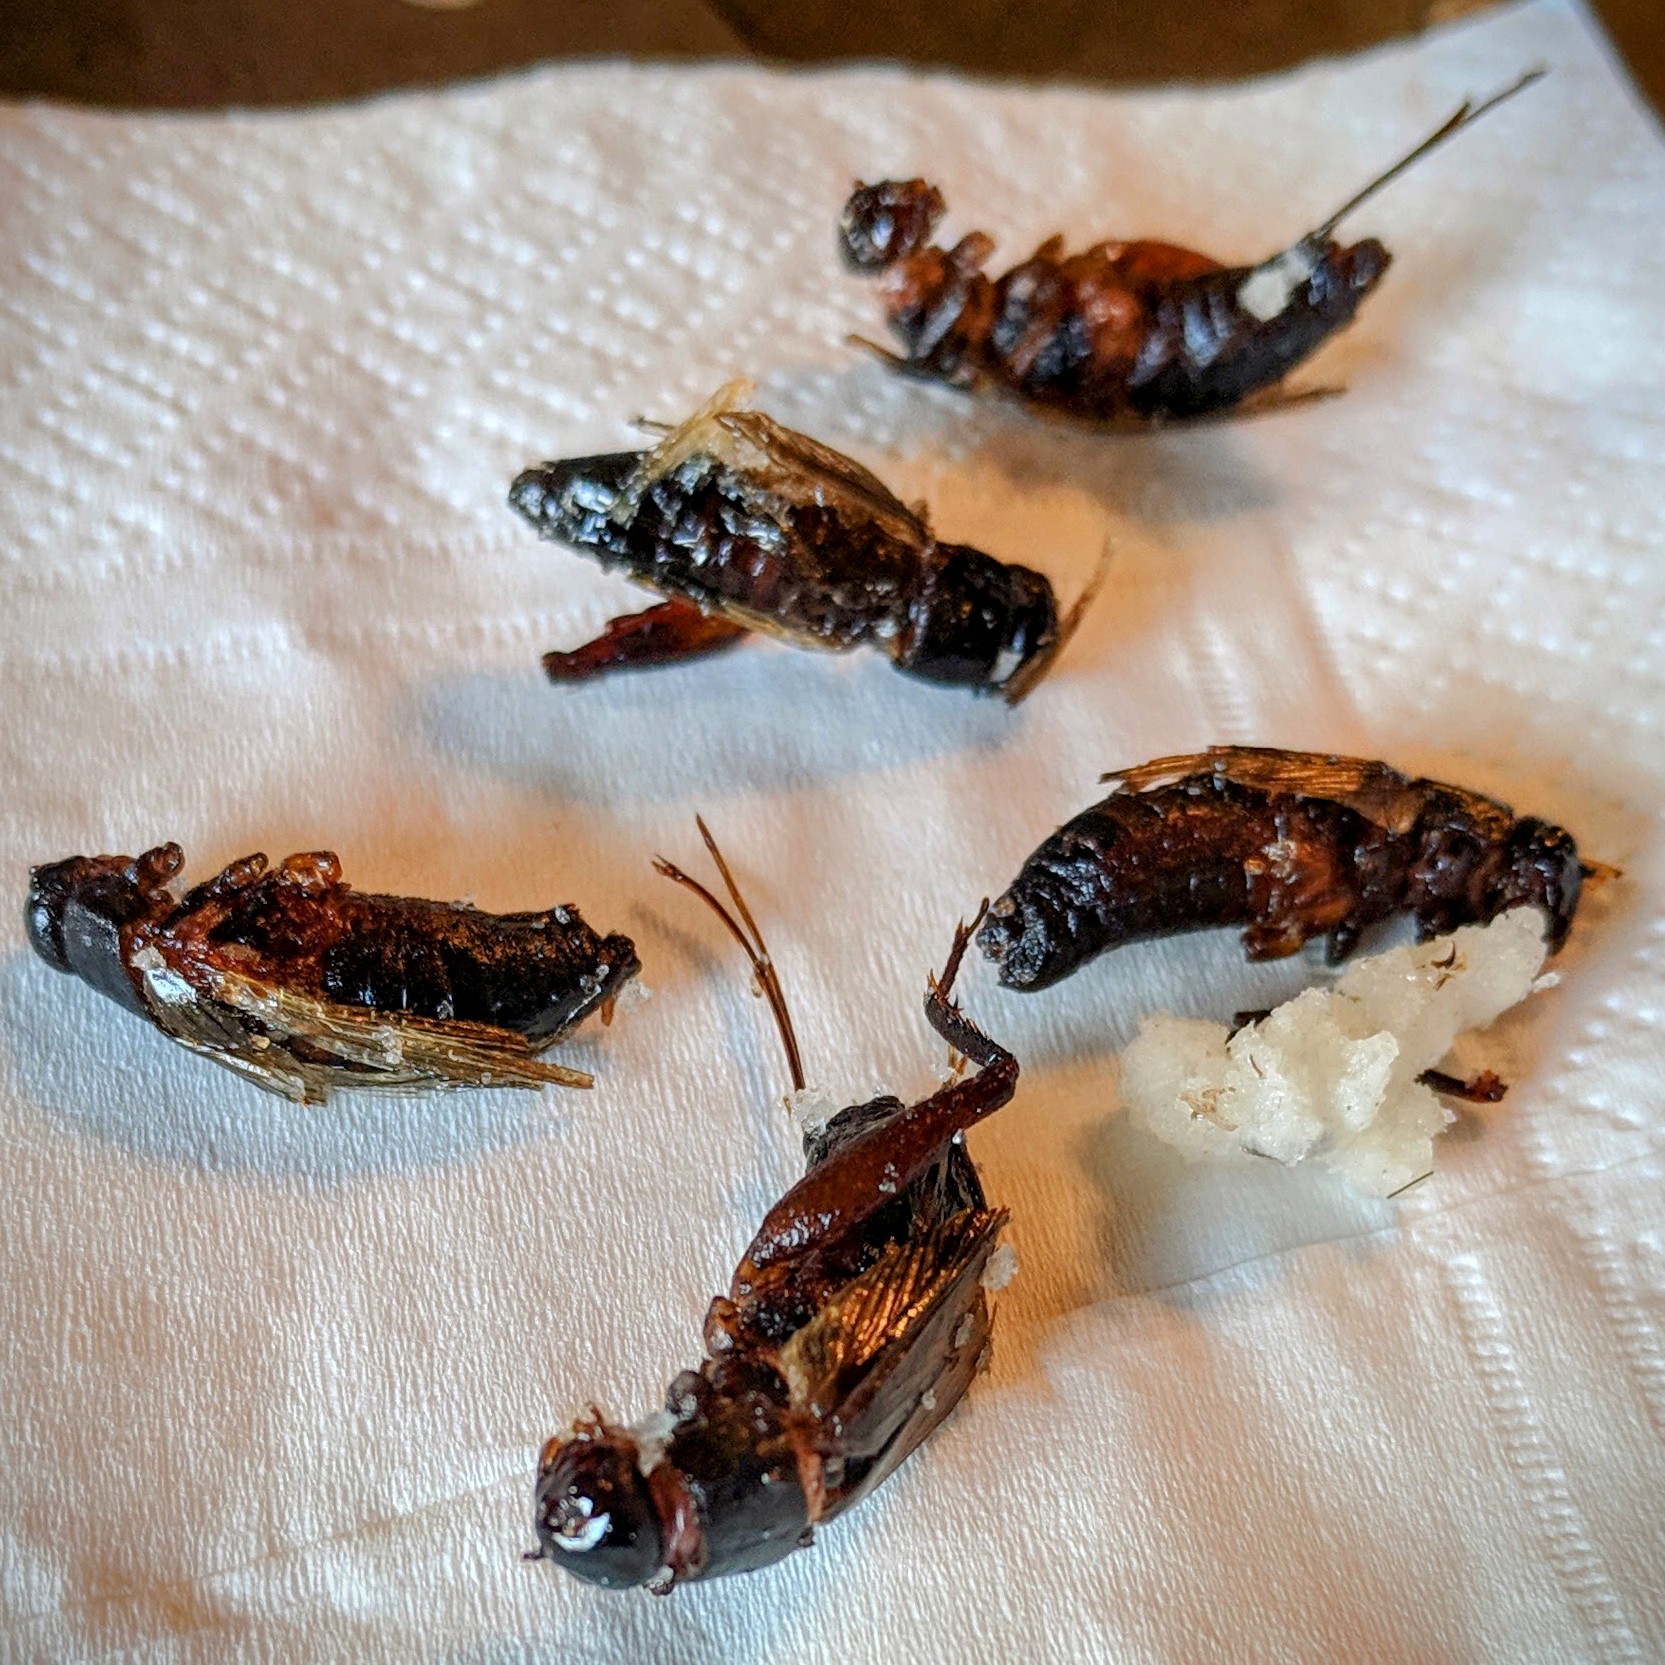 Deep fried crickets